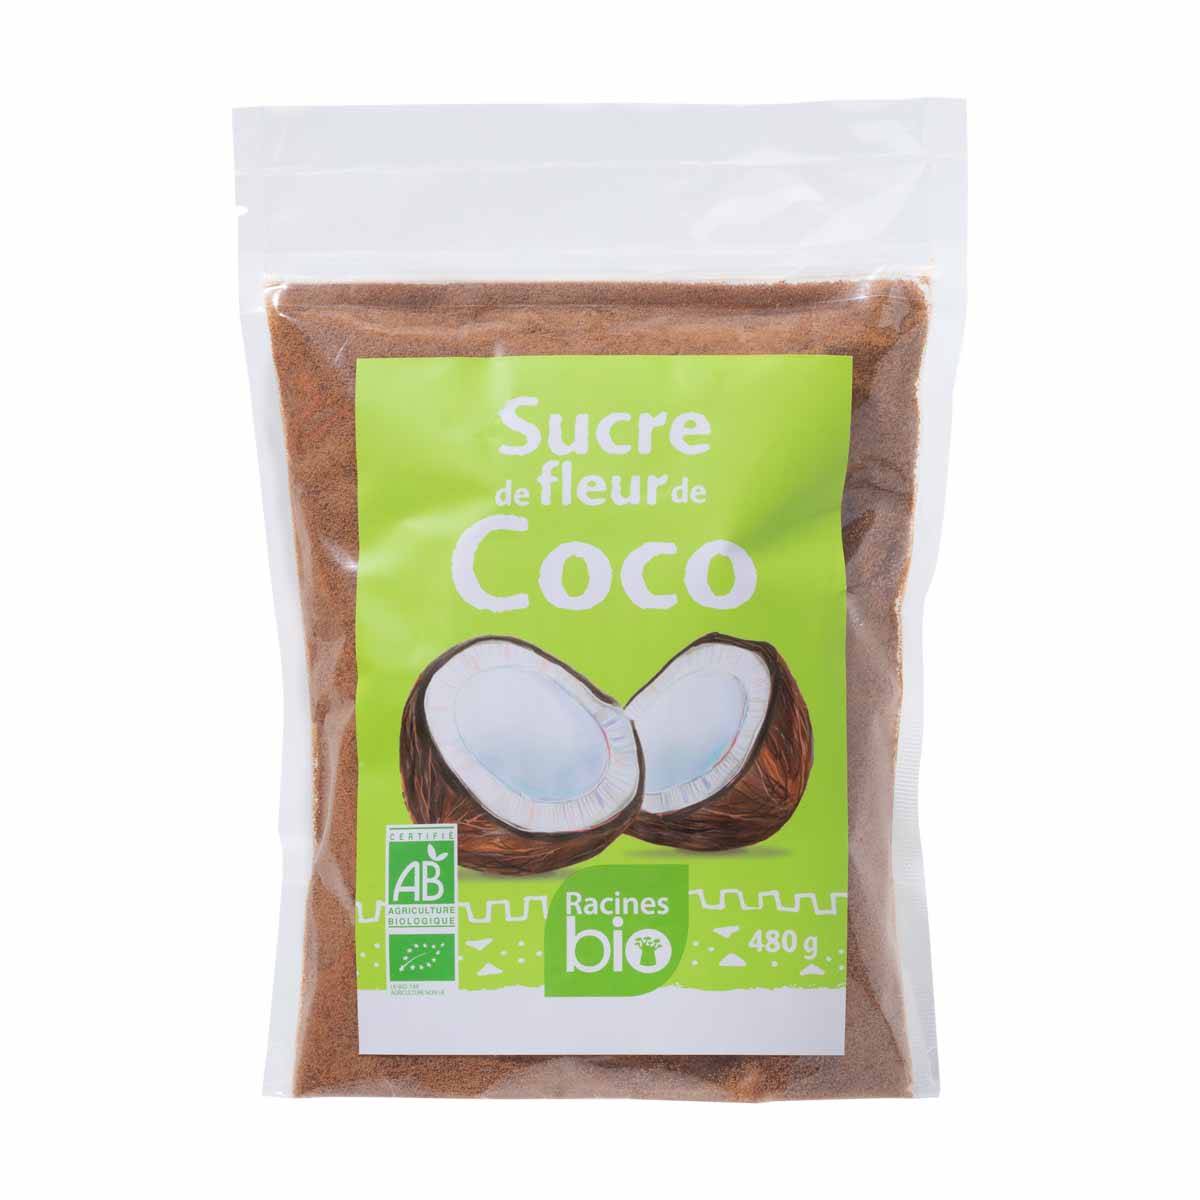 Sucre de coco bio (fleurs de coco)